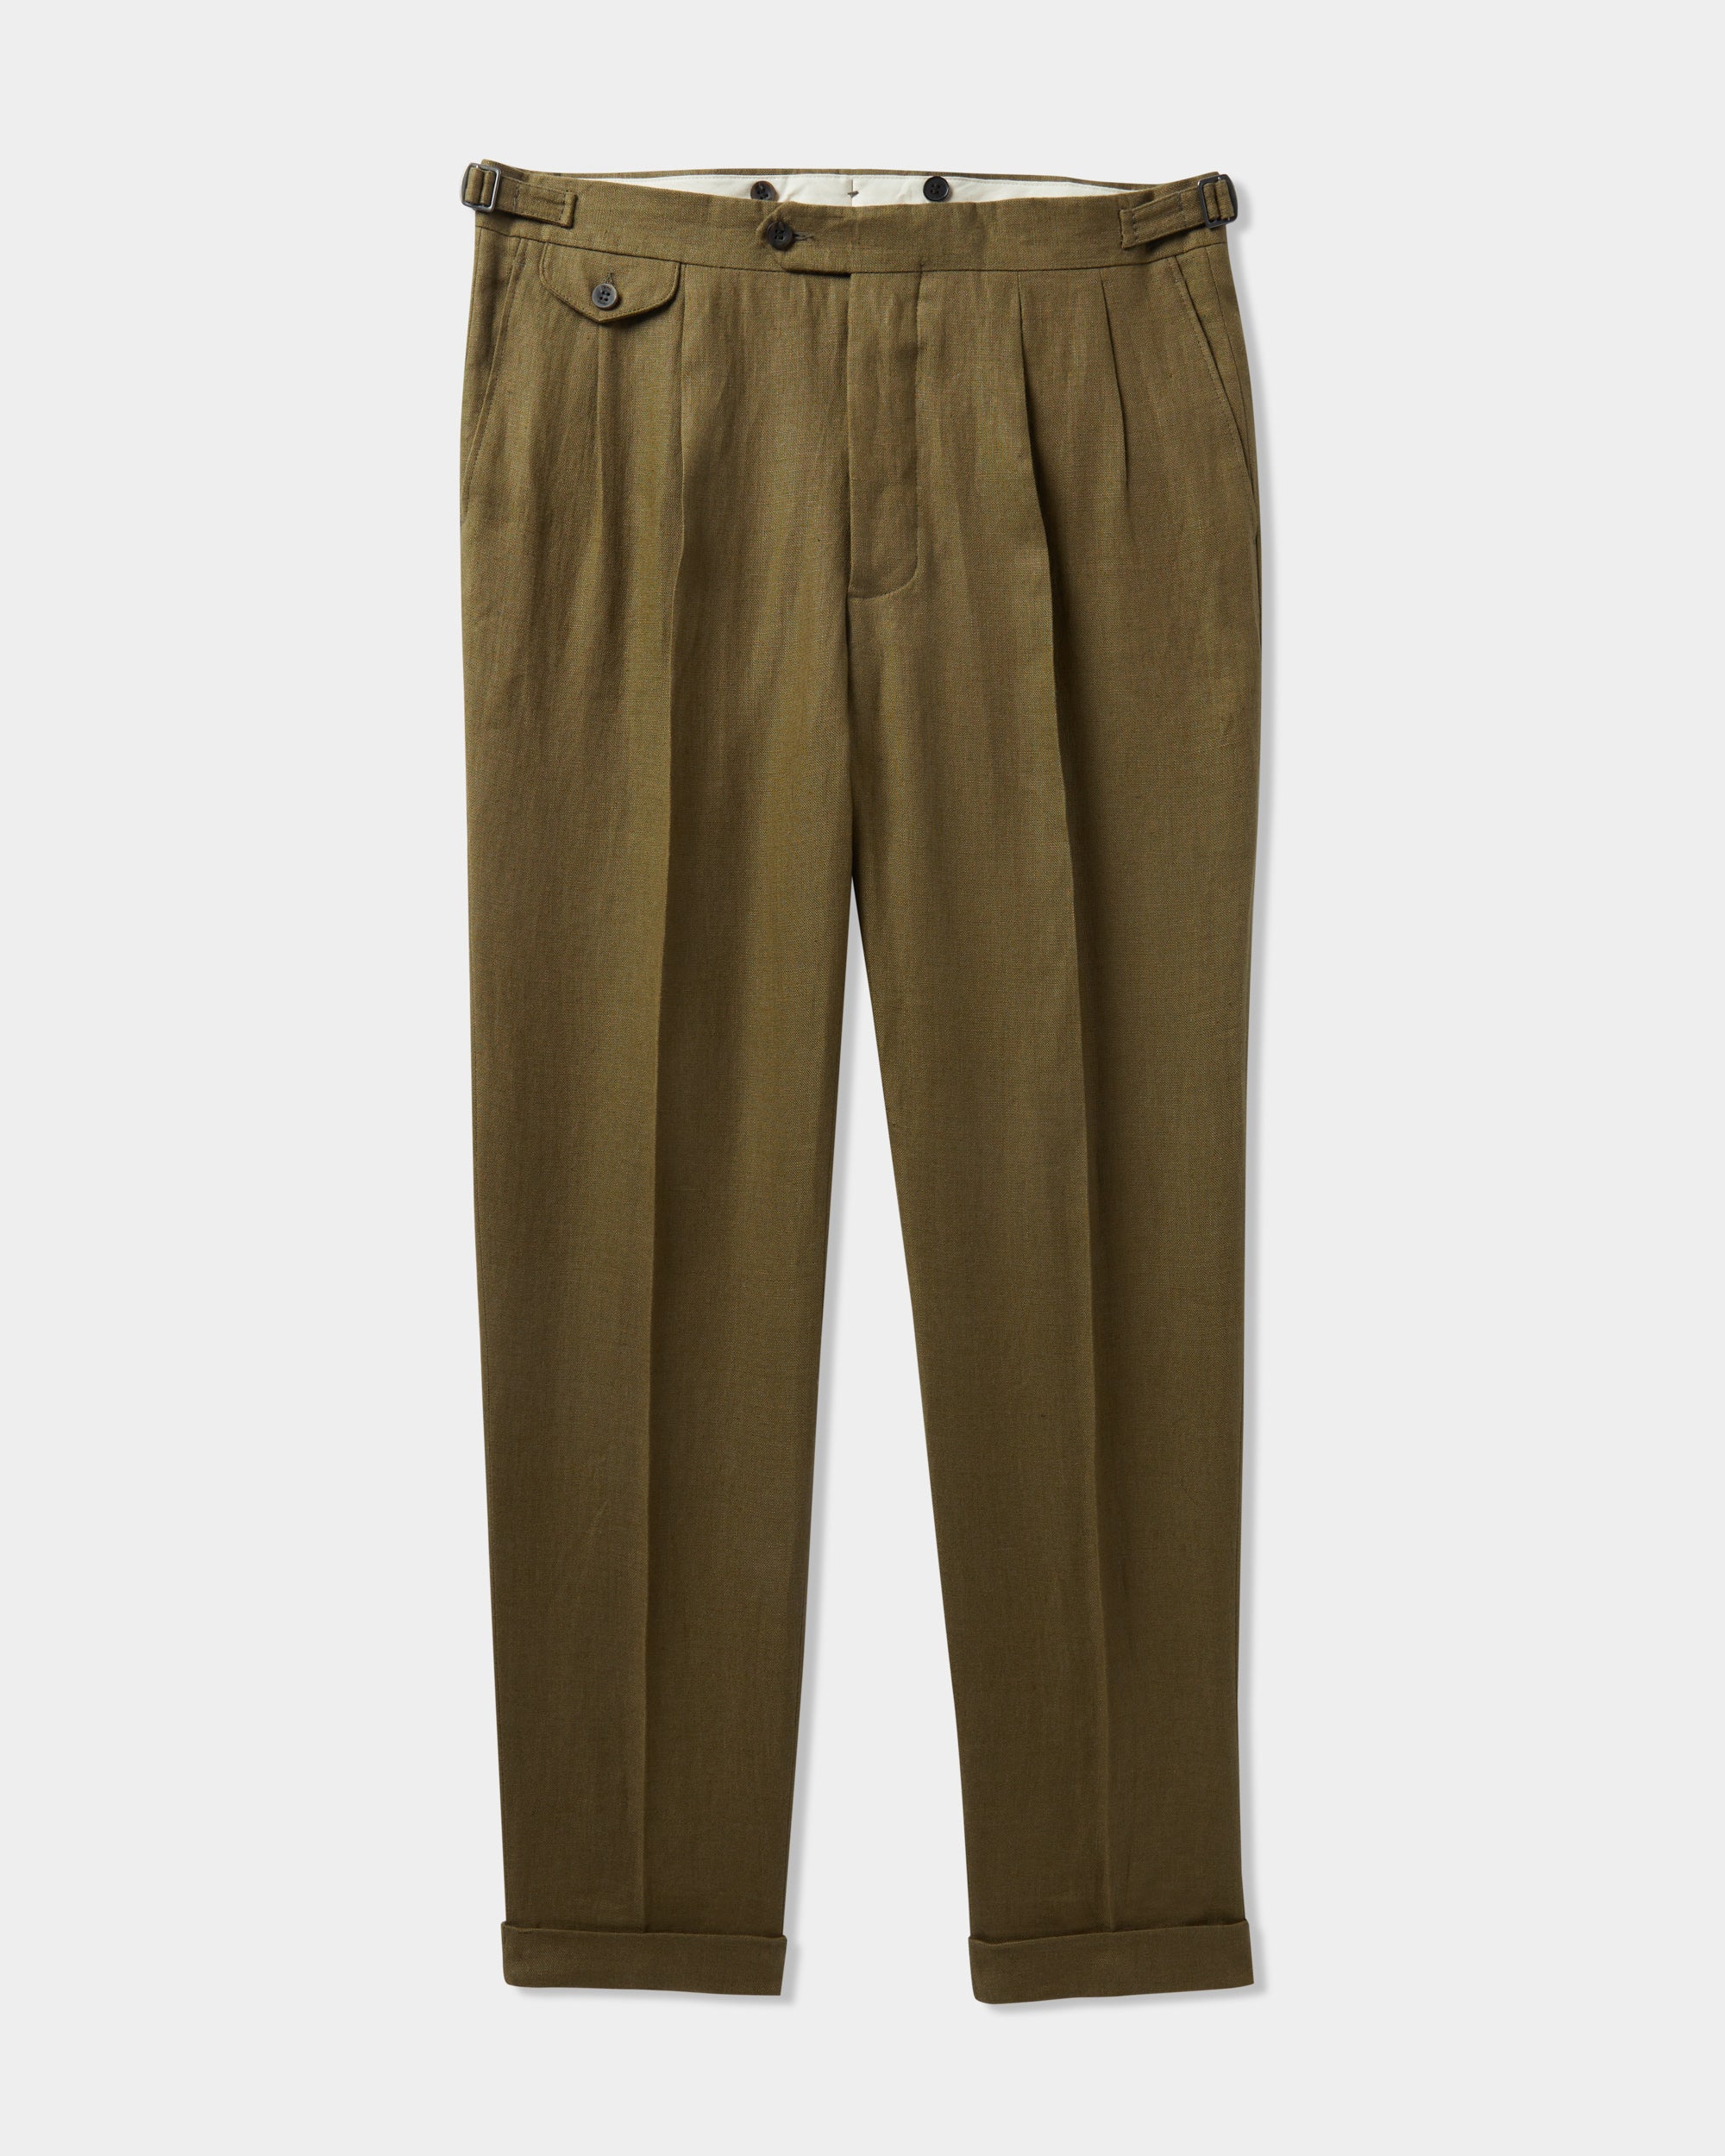 Pantaloni di lino per look very fresh questa estate 2020